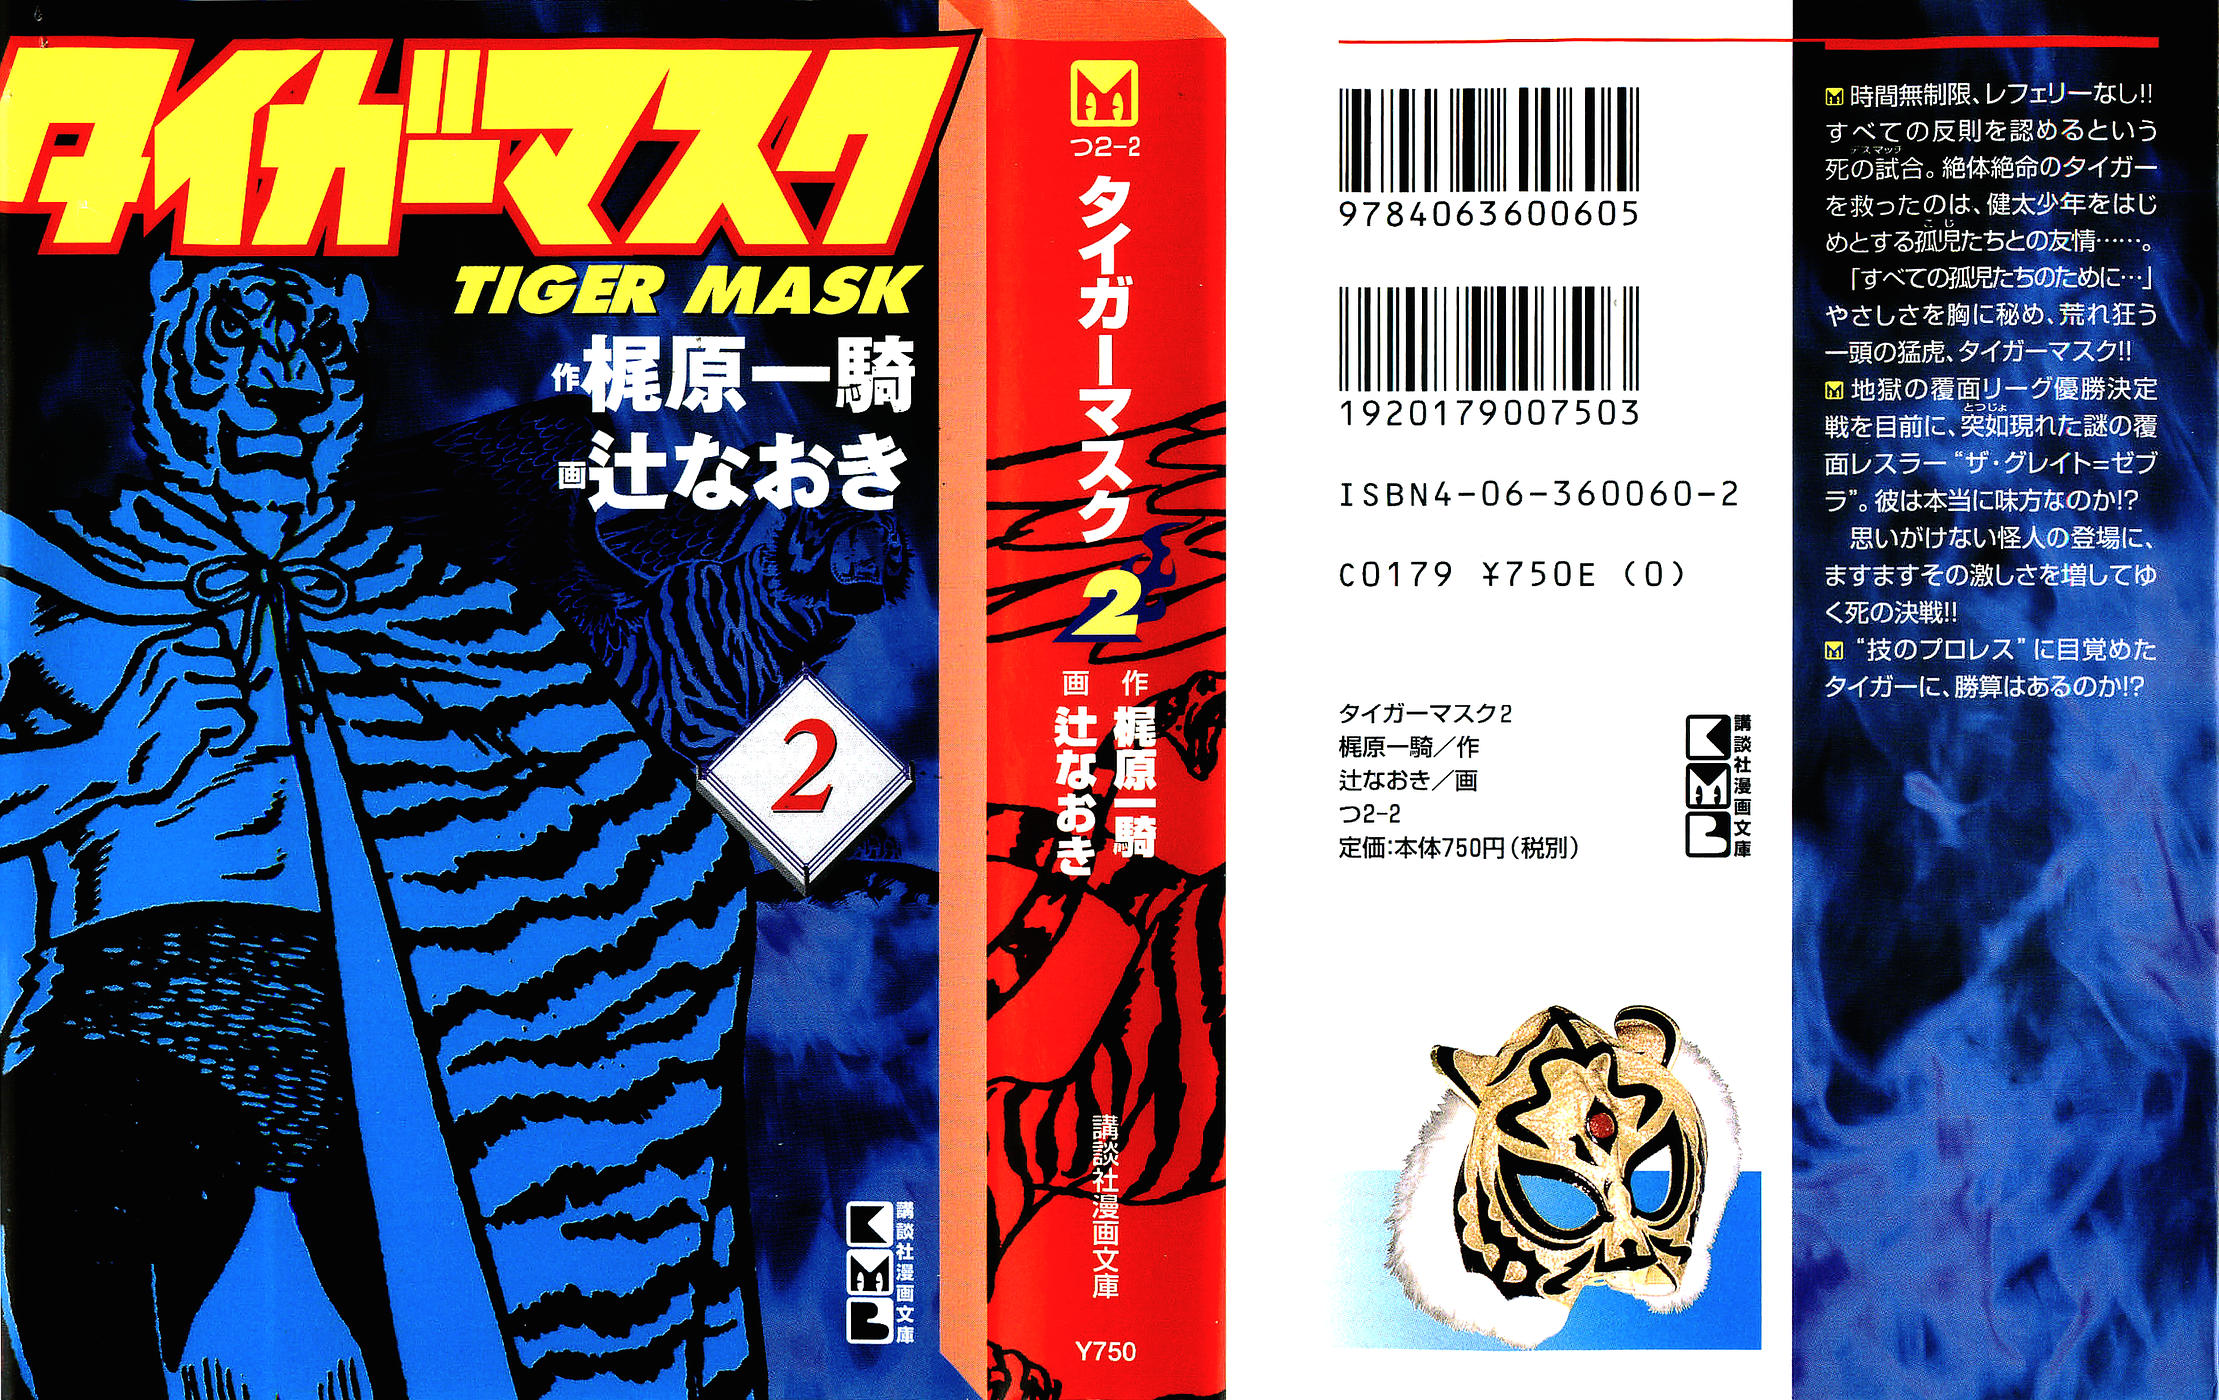 タイガーマスク02-000a.jpg